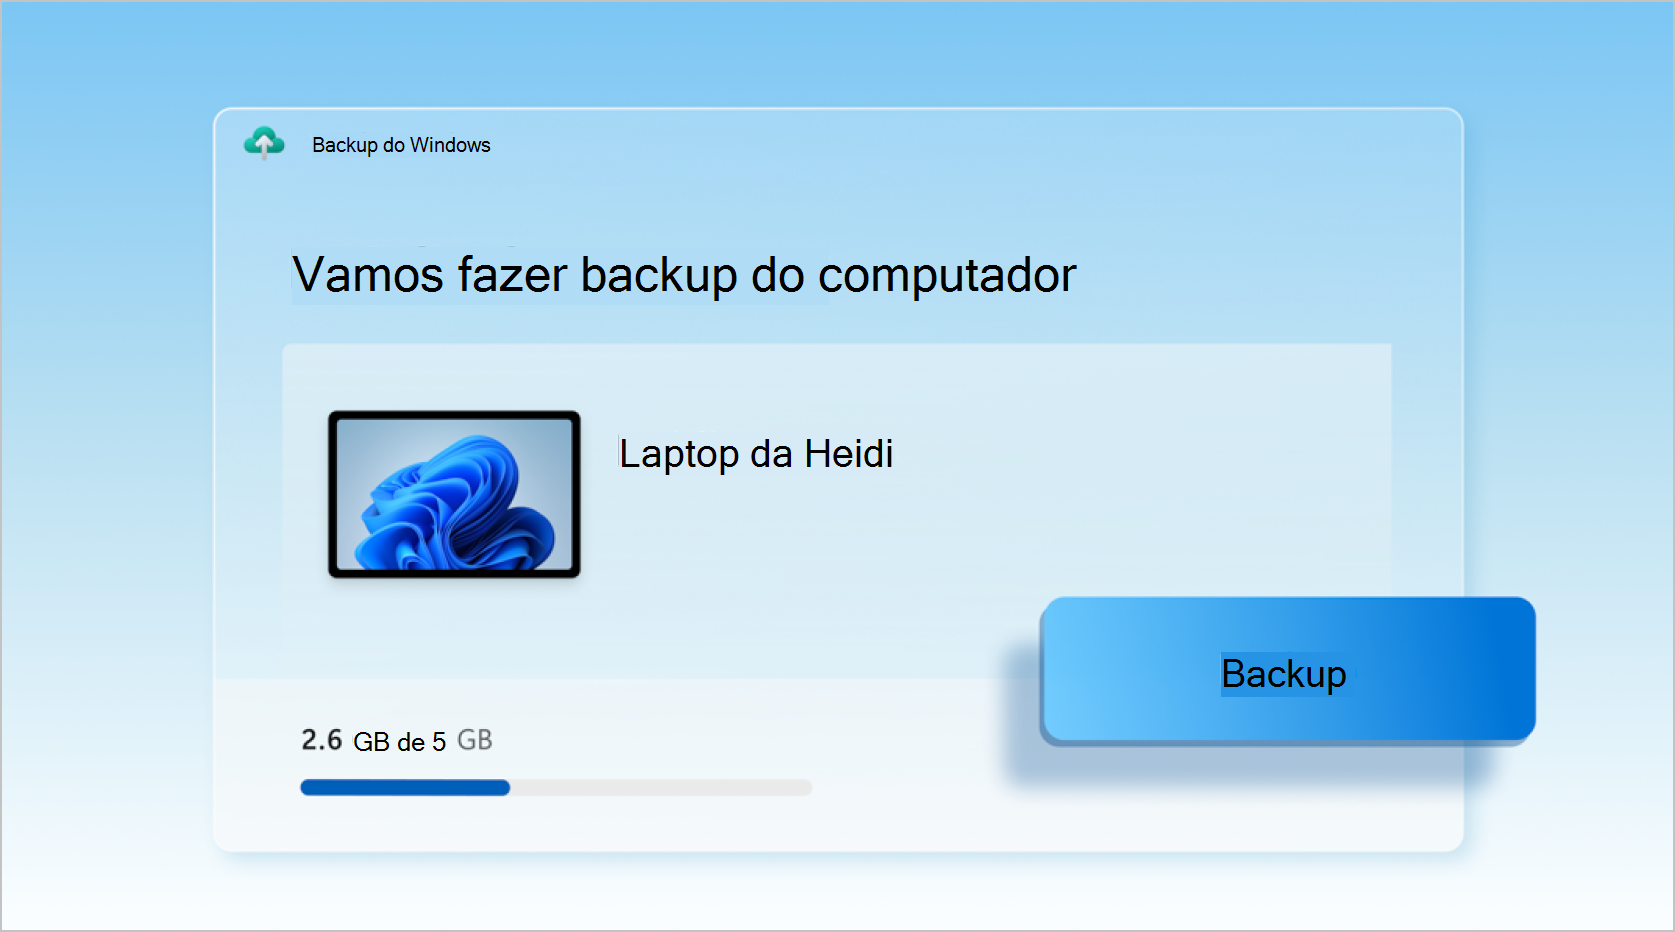 Captura de tela do Backup do Windows sendo usado para fazer backup de um laptop.